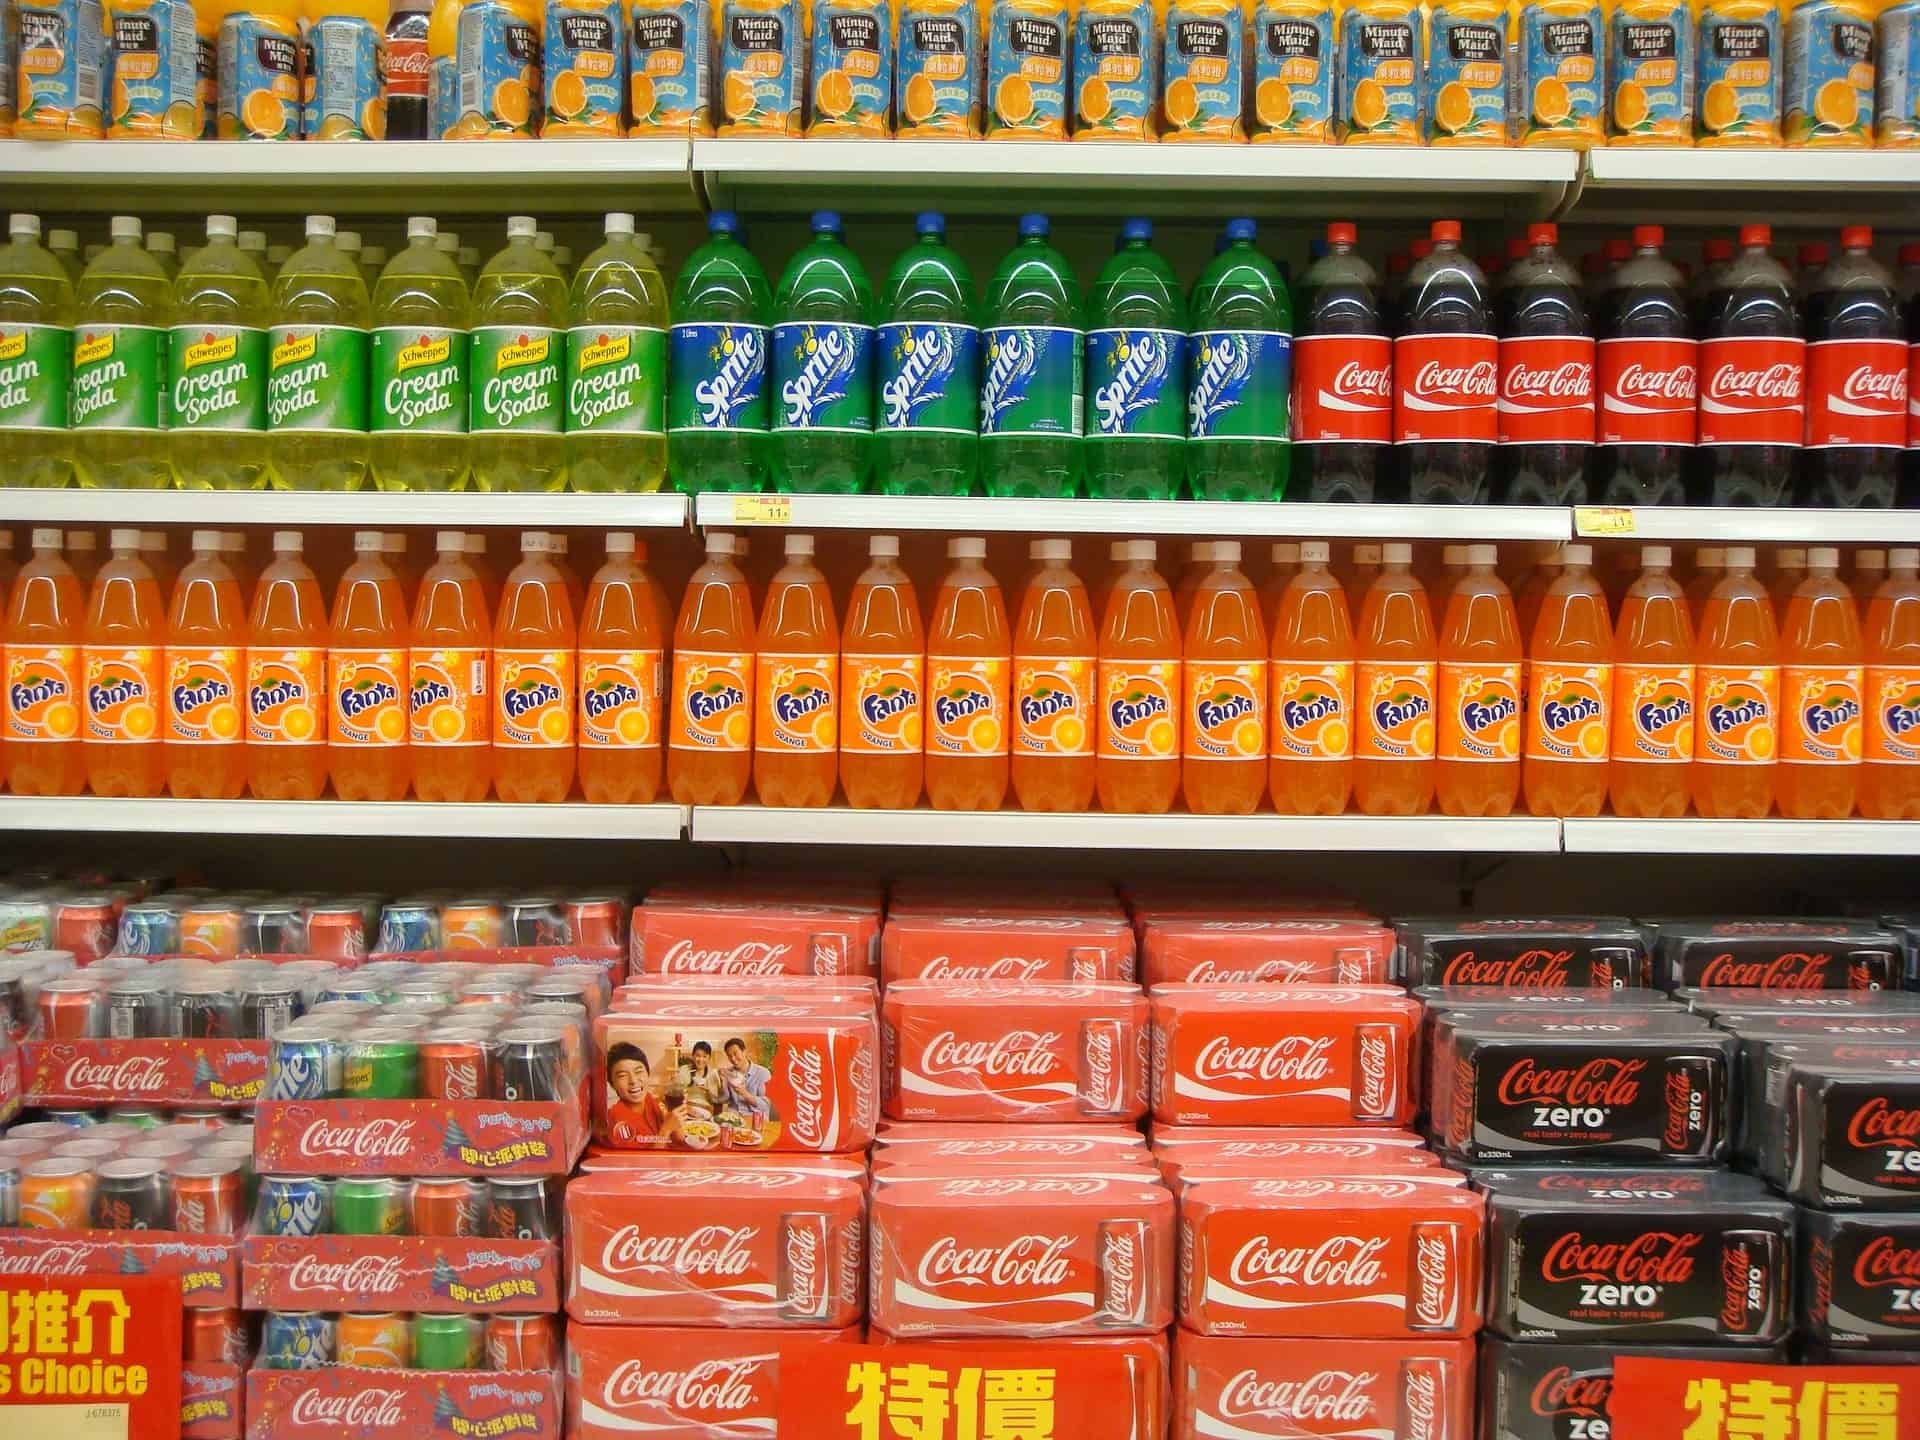 soda on shelves in supermarket